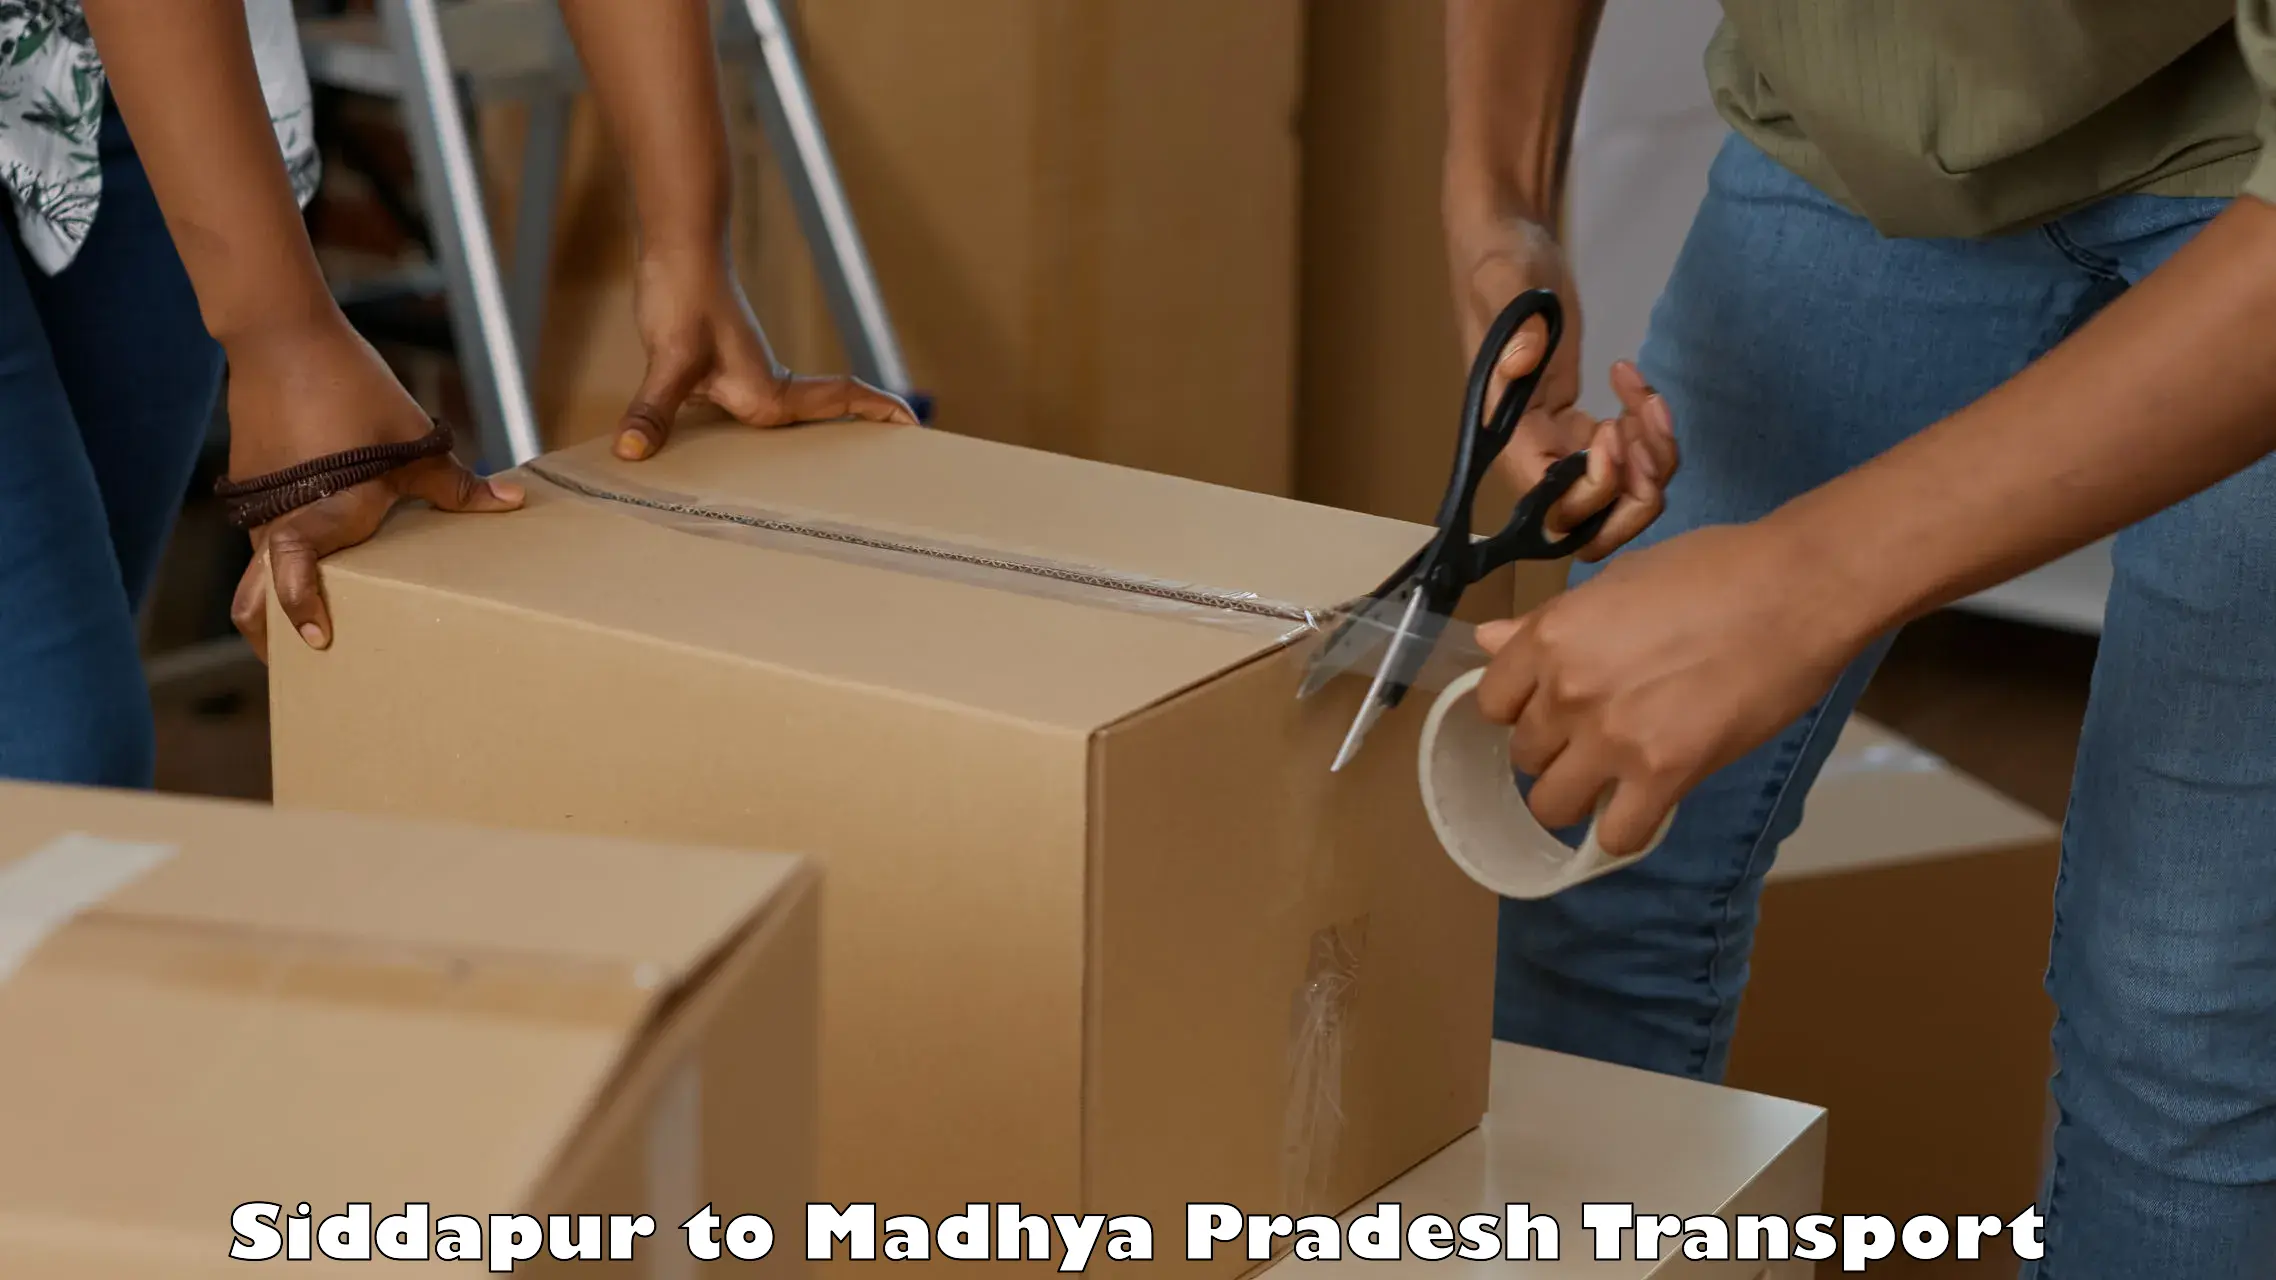 Commercial transport service Siddapur to Vijayraghavgarh